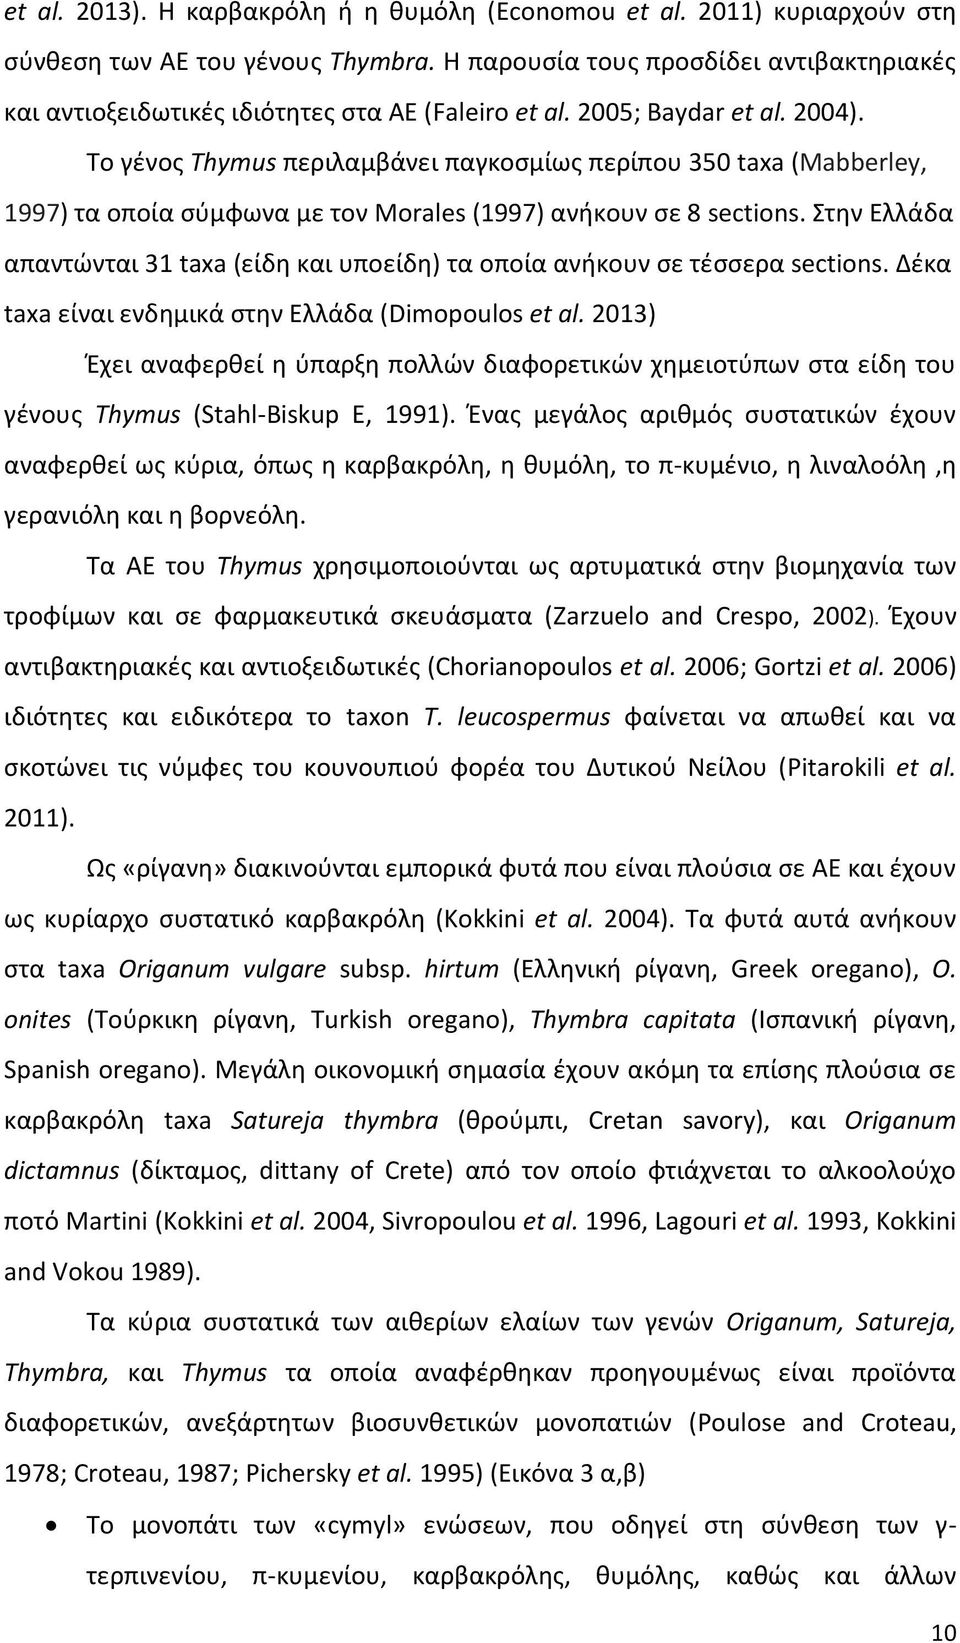 Το γένος Thymus περιλαμβάνει παγκοσμίως περίπου 350 taxa (Mabberley, 1997) τα οποία σύμφωνα με τον Morales (1997) ανήκουν σε 8 sections.